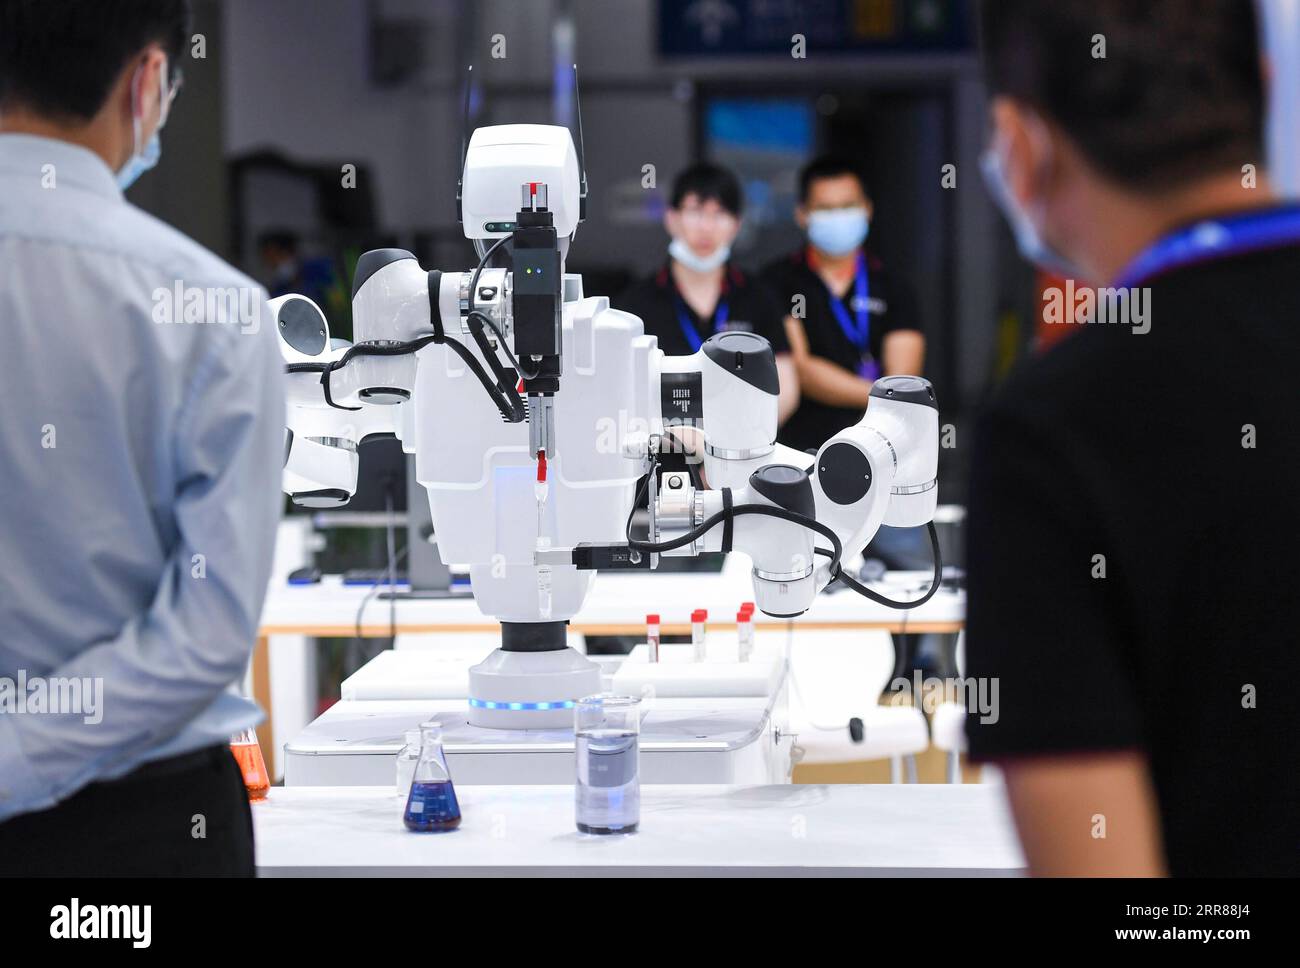 210424 -- SHENZHEN, 24. April 2021 -- Besucher sehen einen Roboter, der im biochemischen und medizinischen Bereich während der 19. Konferenz über den internationalen Austausch von Fachleuten CIEP in Shenzhen, Südchinesische Provinz Guangdong, 24. April 2021 verwendet werden kann. Die Konferenz startete am Samstag in Chinas Technologiezentrum Shenzhen und zog über 1.200 professionelle Institutionen und Organisationen sowie über 10.000 Regierungsvertreter, Experten und High-End-Talente aus mehr als 30 Ländern und Regionen an. CHINA-SHENZHEN-PROFESSIONALS TAUSCHEN KONFERENZ-ERÖFFNUNG CN MAOXSIQIAN PUBLICATIONXNOTXINXCH Stockfoto